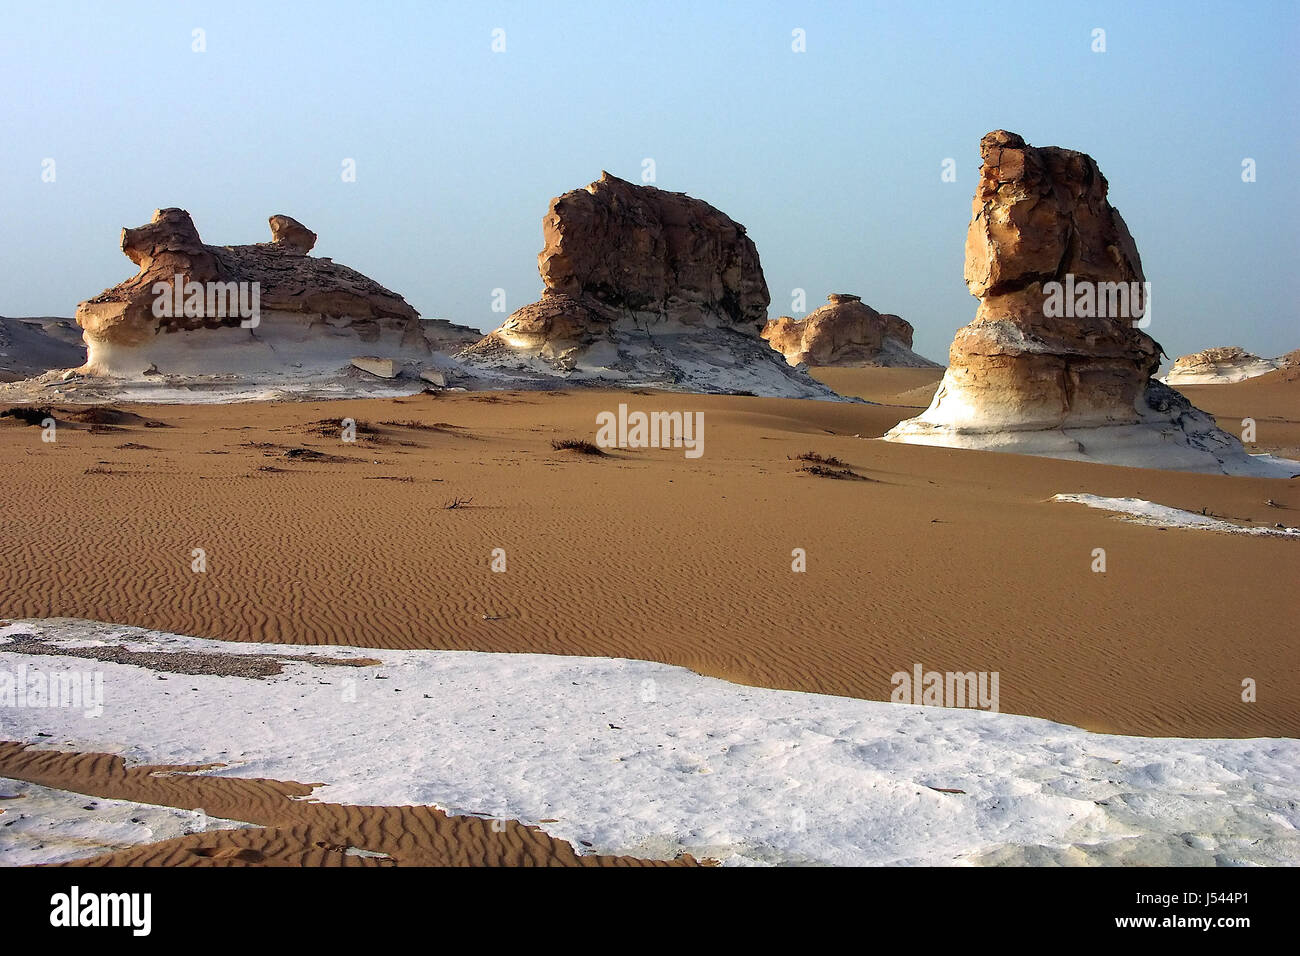 Wüste Ödland Sonnenaufgang Rock Ägypten Kreidung Rock Sand Sand Steinen Weisse wste Stockfoto